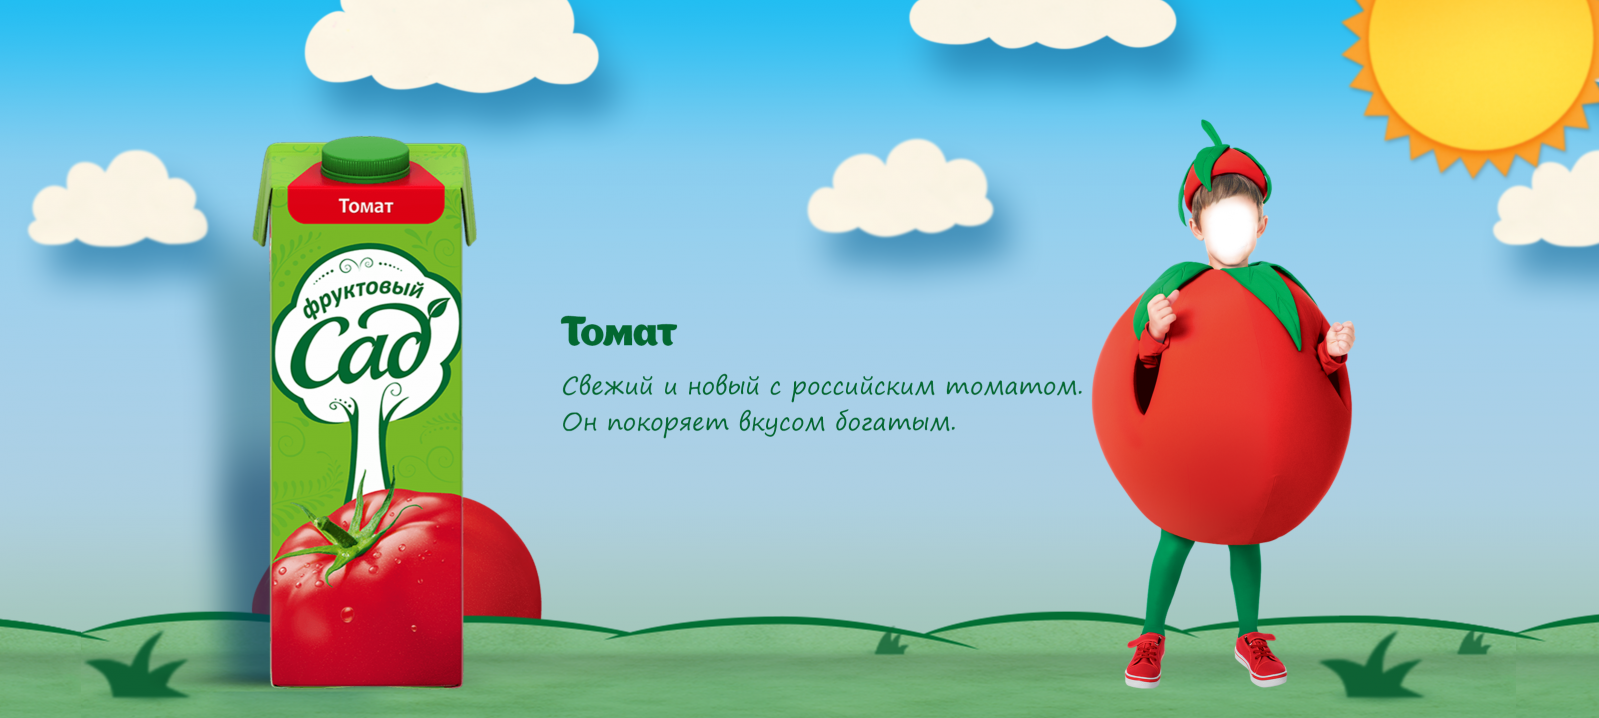 Томат фруктовый сад реклама. Реклама сока а я томат. А Я томат реклама фруктовый сад. Помидор из рекламы фруктовый сад.